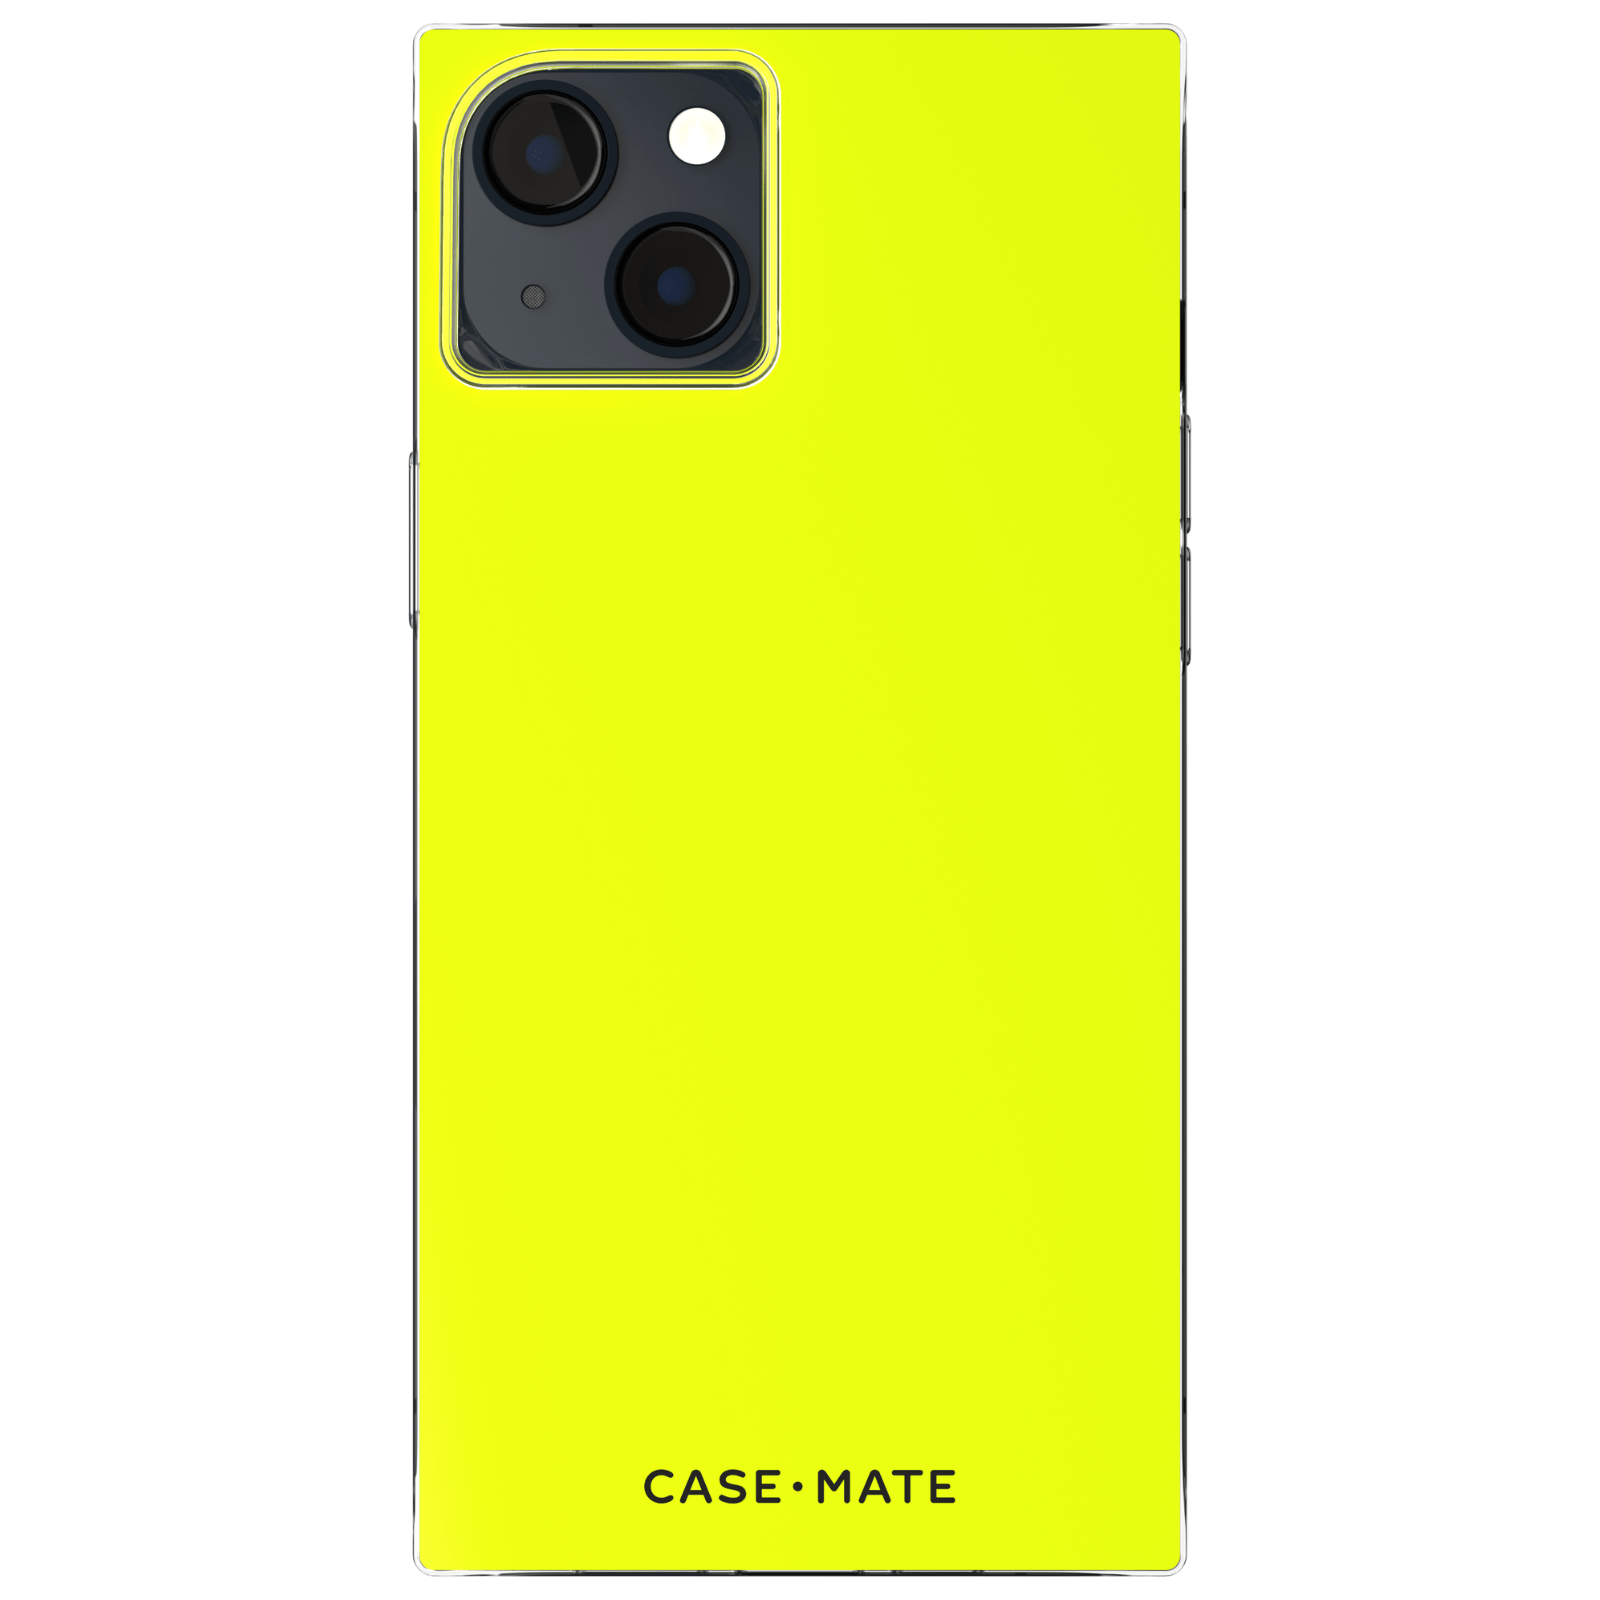 Matte Neon Square iPhone Case